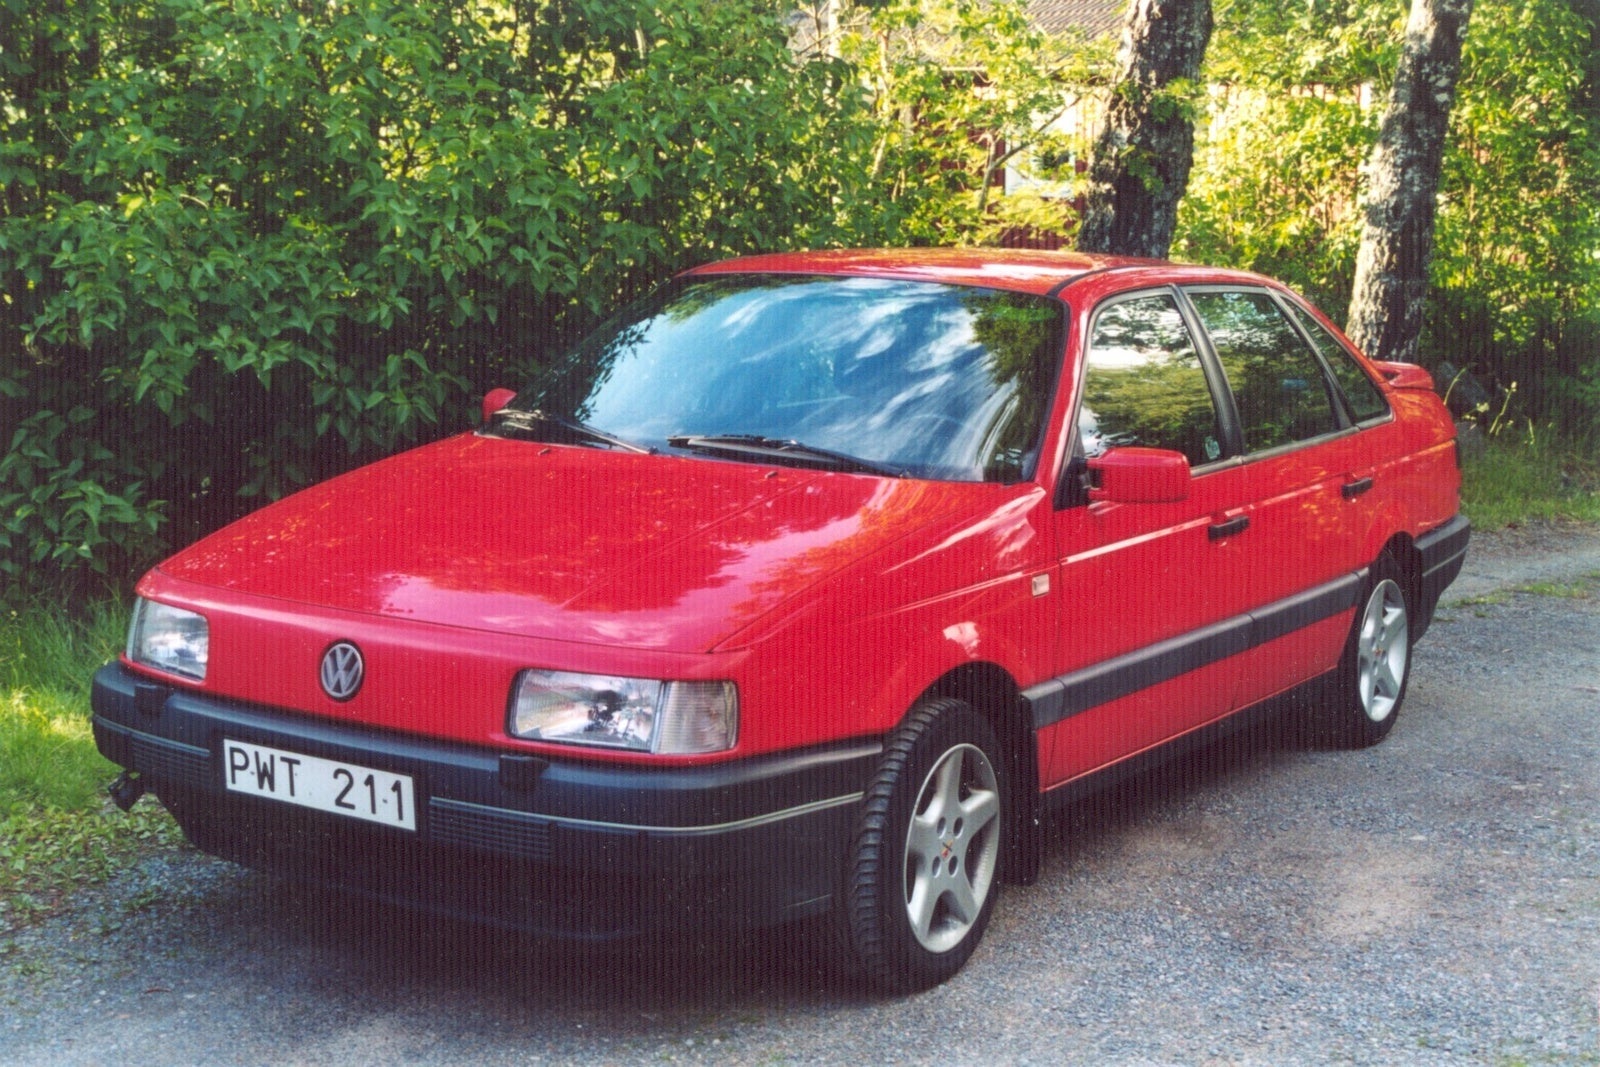 Купить фольксваген в4. Volkswagen Passat b3 седан красный. Фольксваген Пассат 1993. Фольксваген Пассат 1993 красный. Фольксваген Пассат б3 1993.